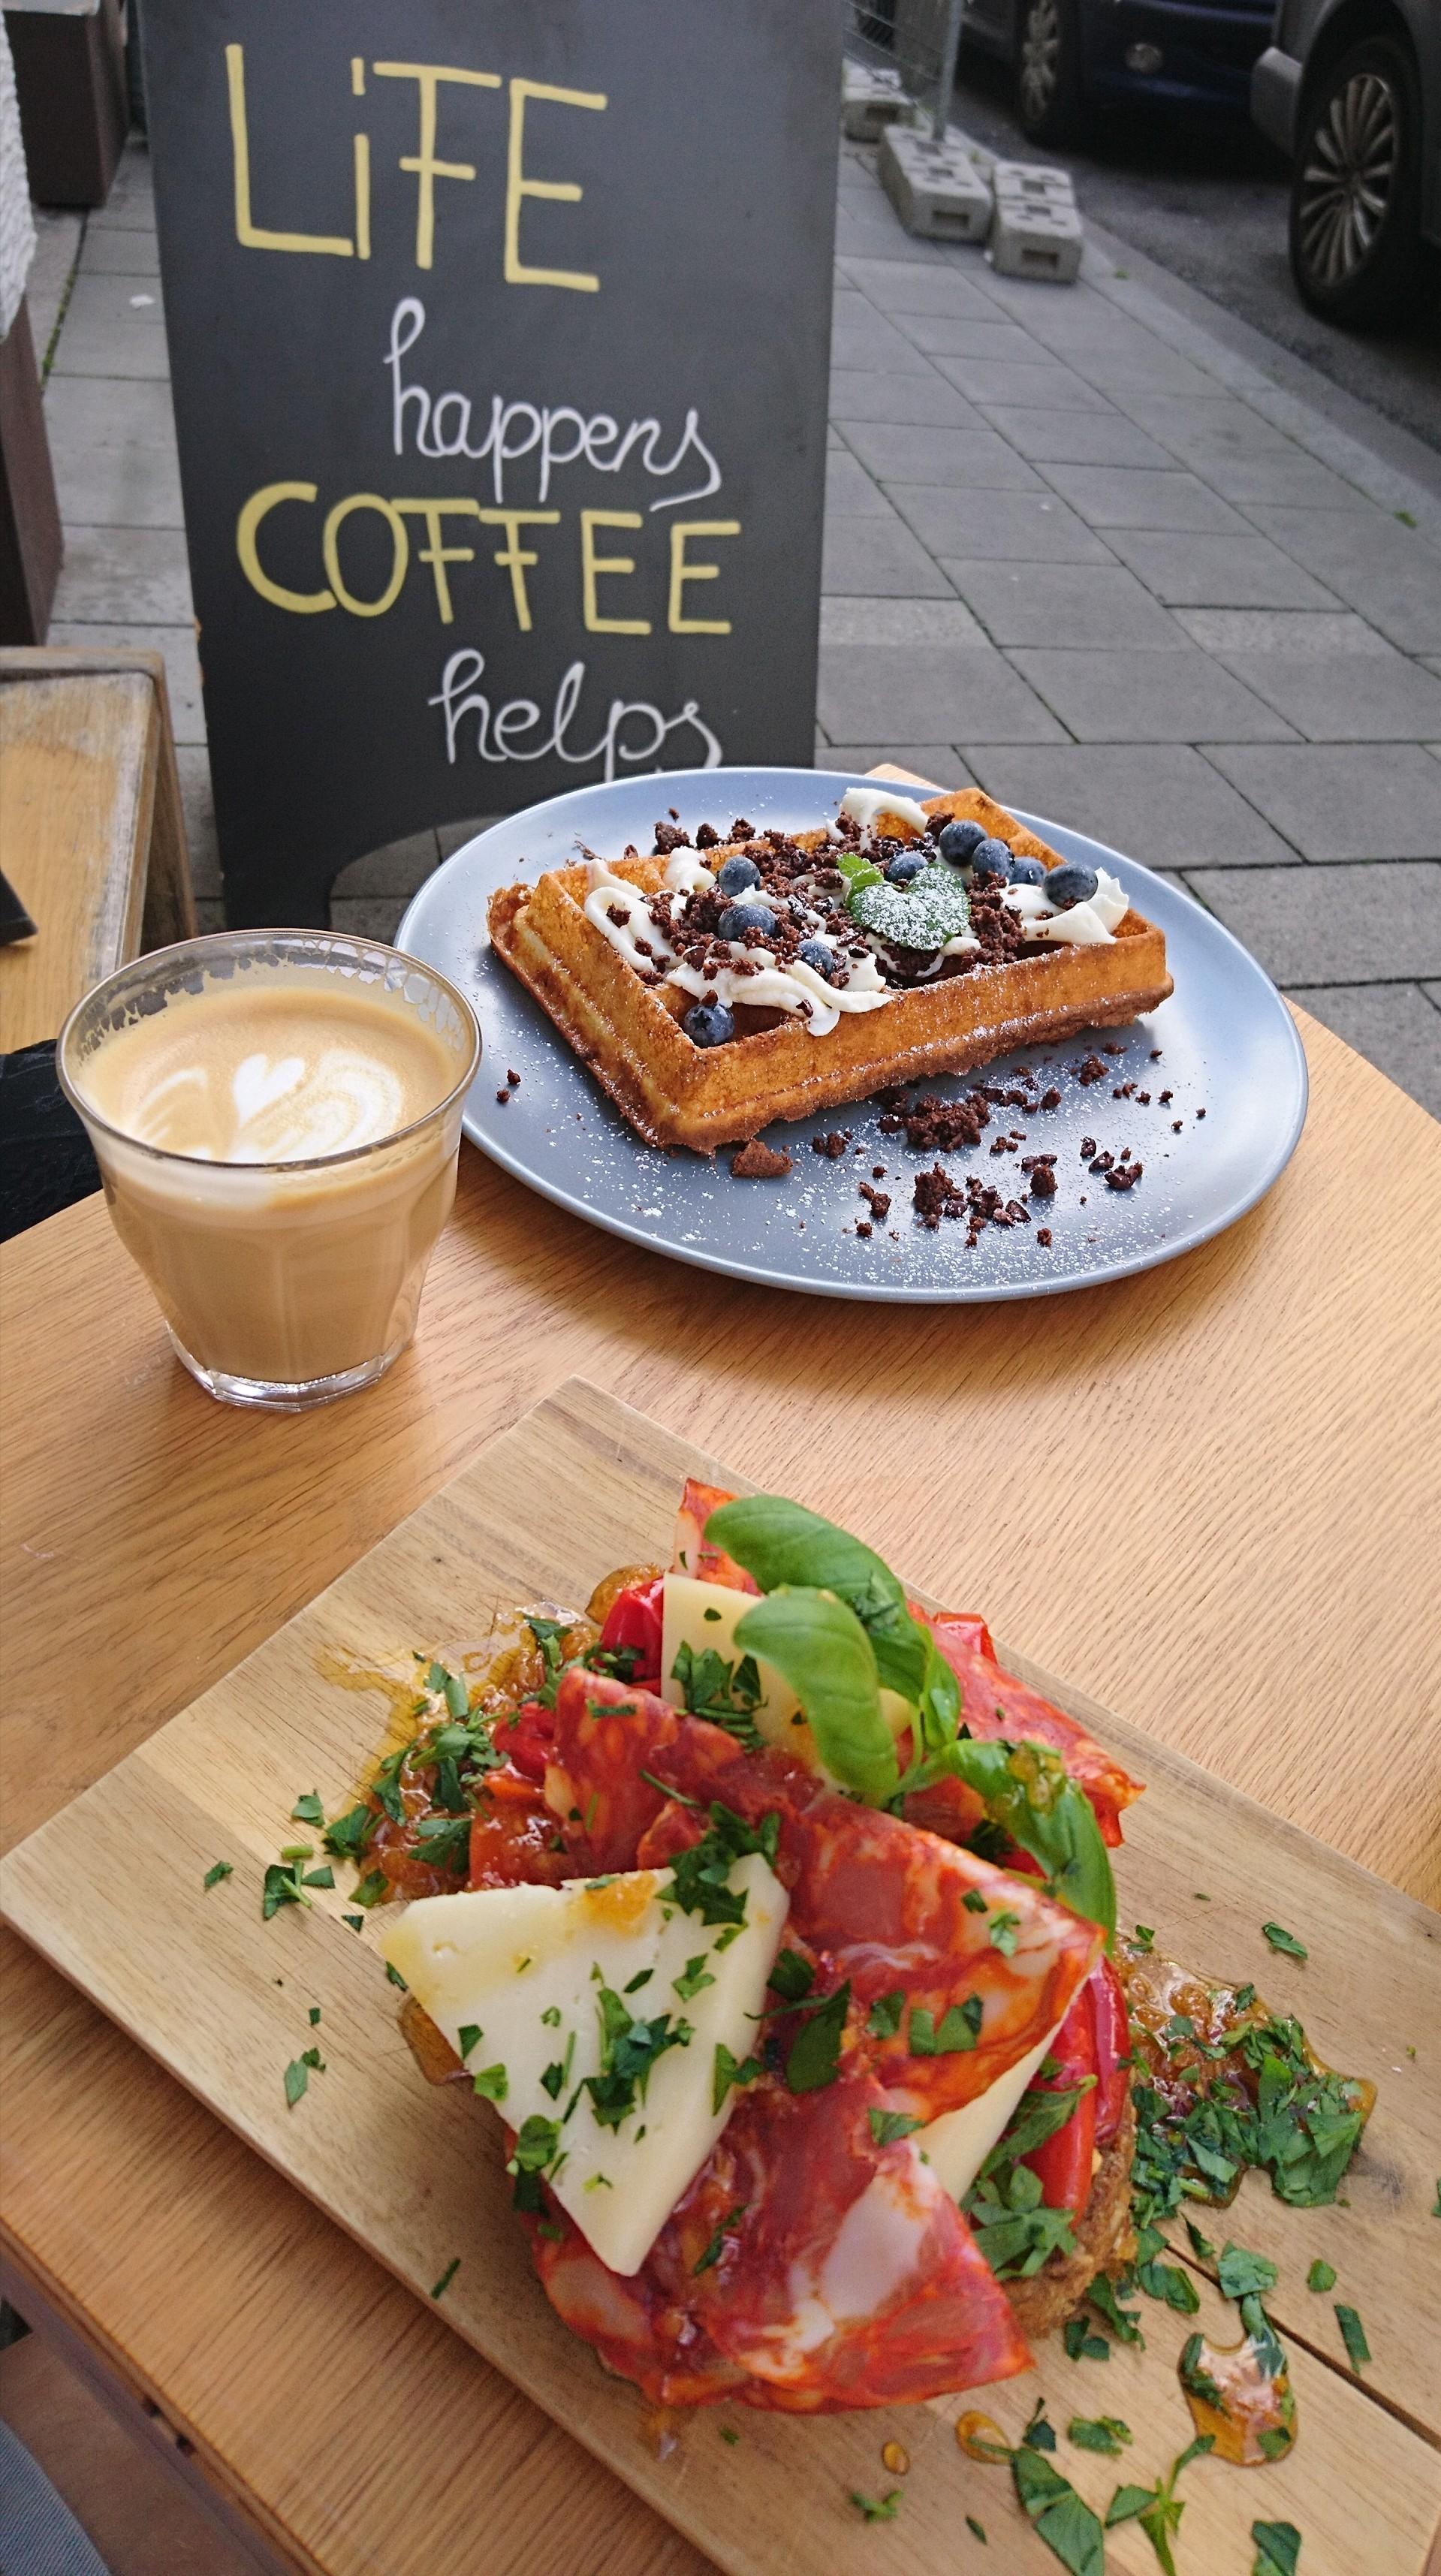 Ich hoffe ihr hattet einen schönen und entspannten Sonntag! ☕
#sonntag #lecker #münchen #city #Frühstück #food #essen